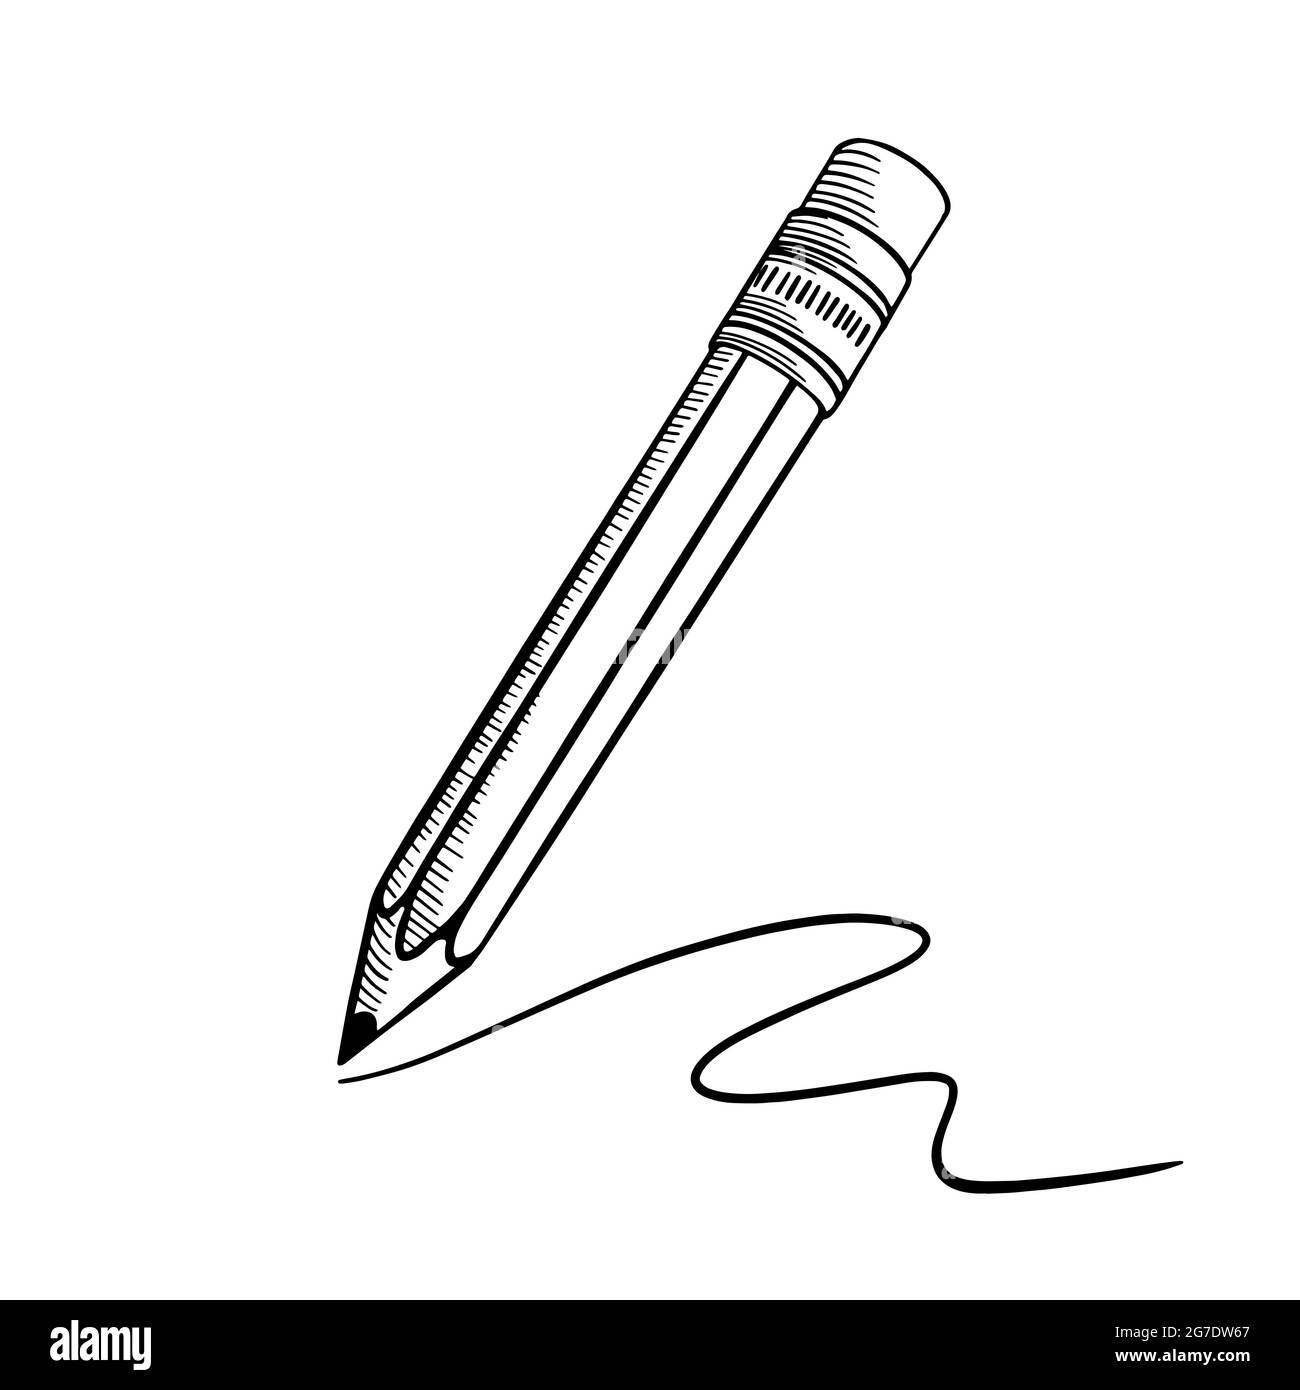 Dessin au crayon tracé à la main avec trait. Coolé noir sur fond blanc.  Illustration vectorielle Image Vectorielle Stock - Alamy